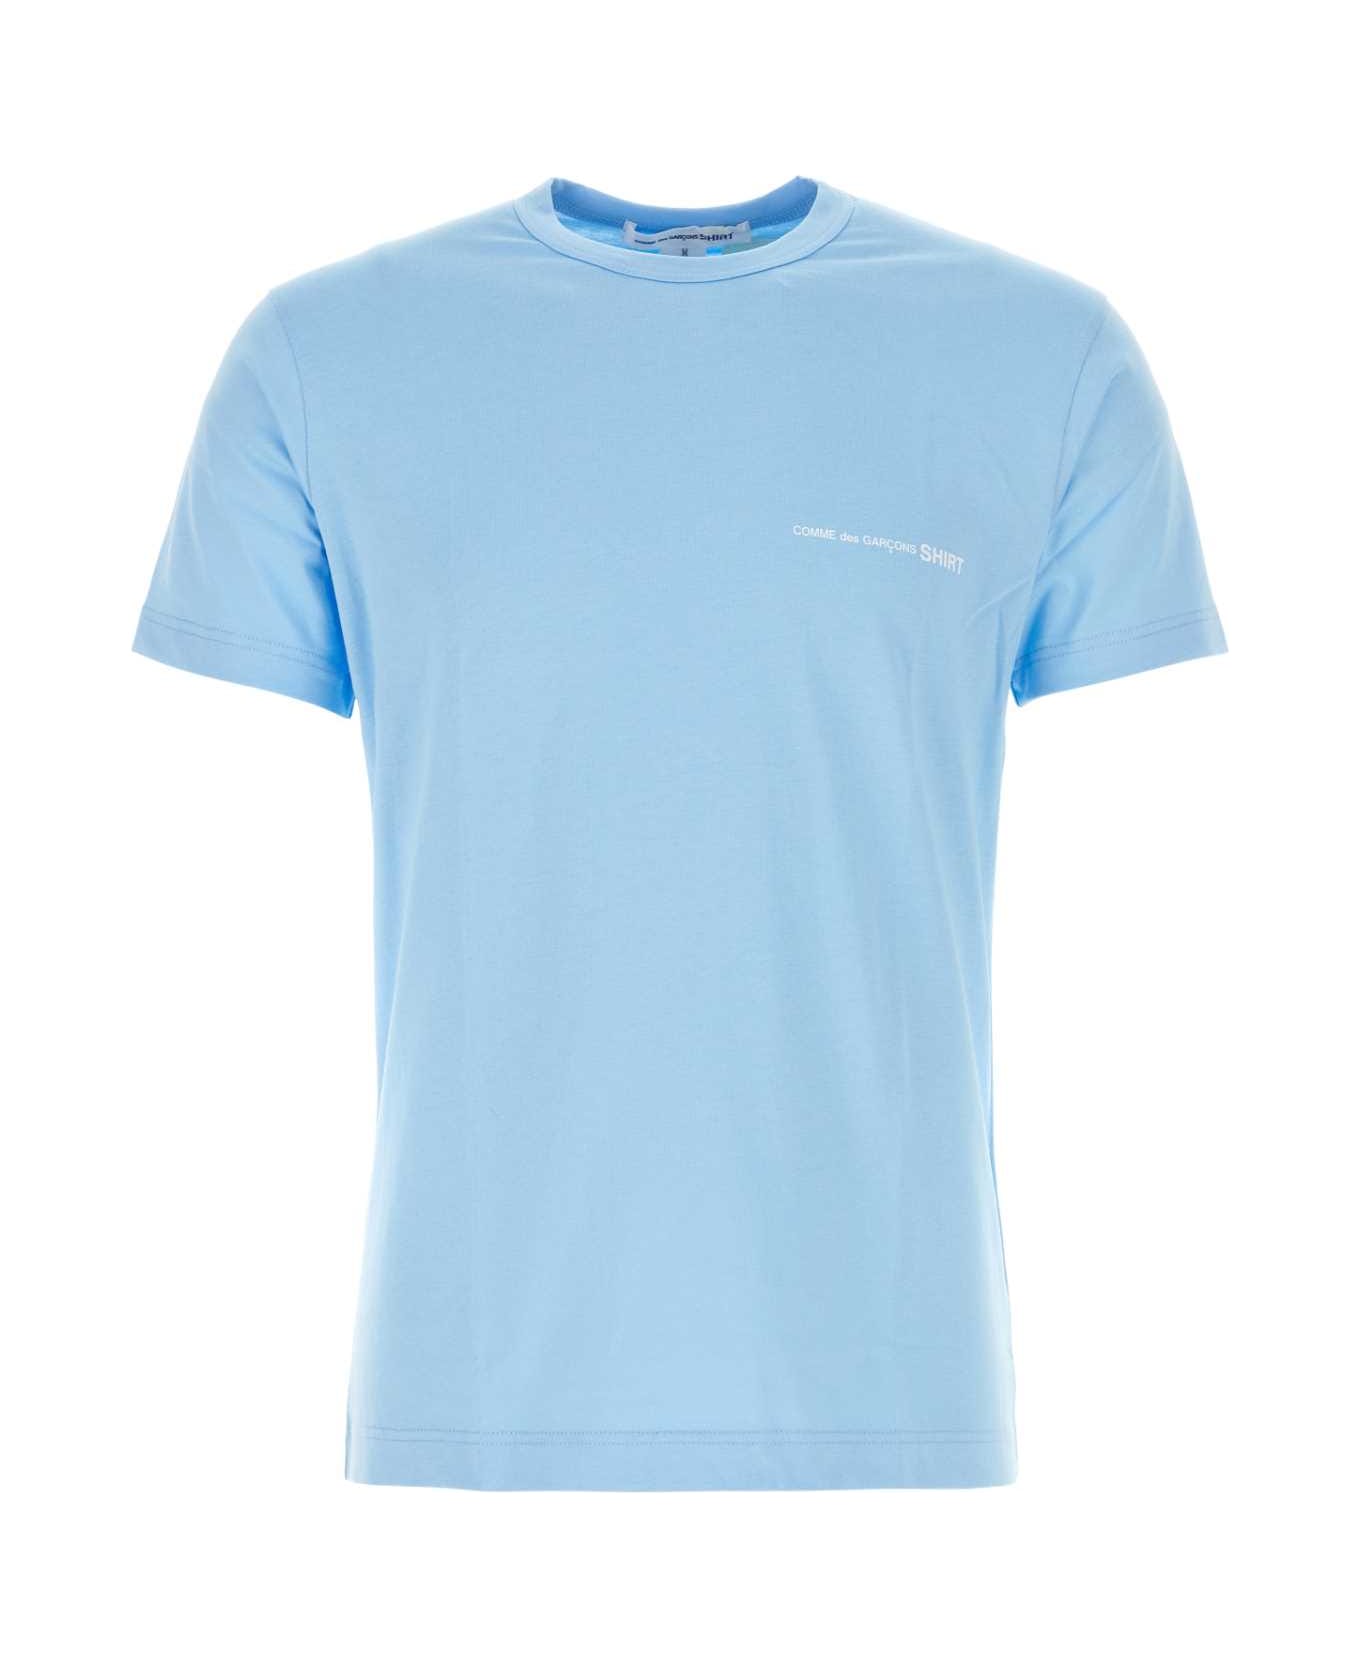 Comme des Garçons Light Blue Cotton T-shirt - BLUE